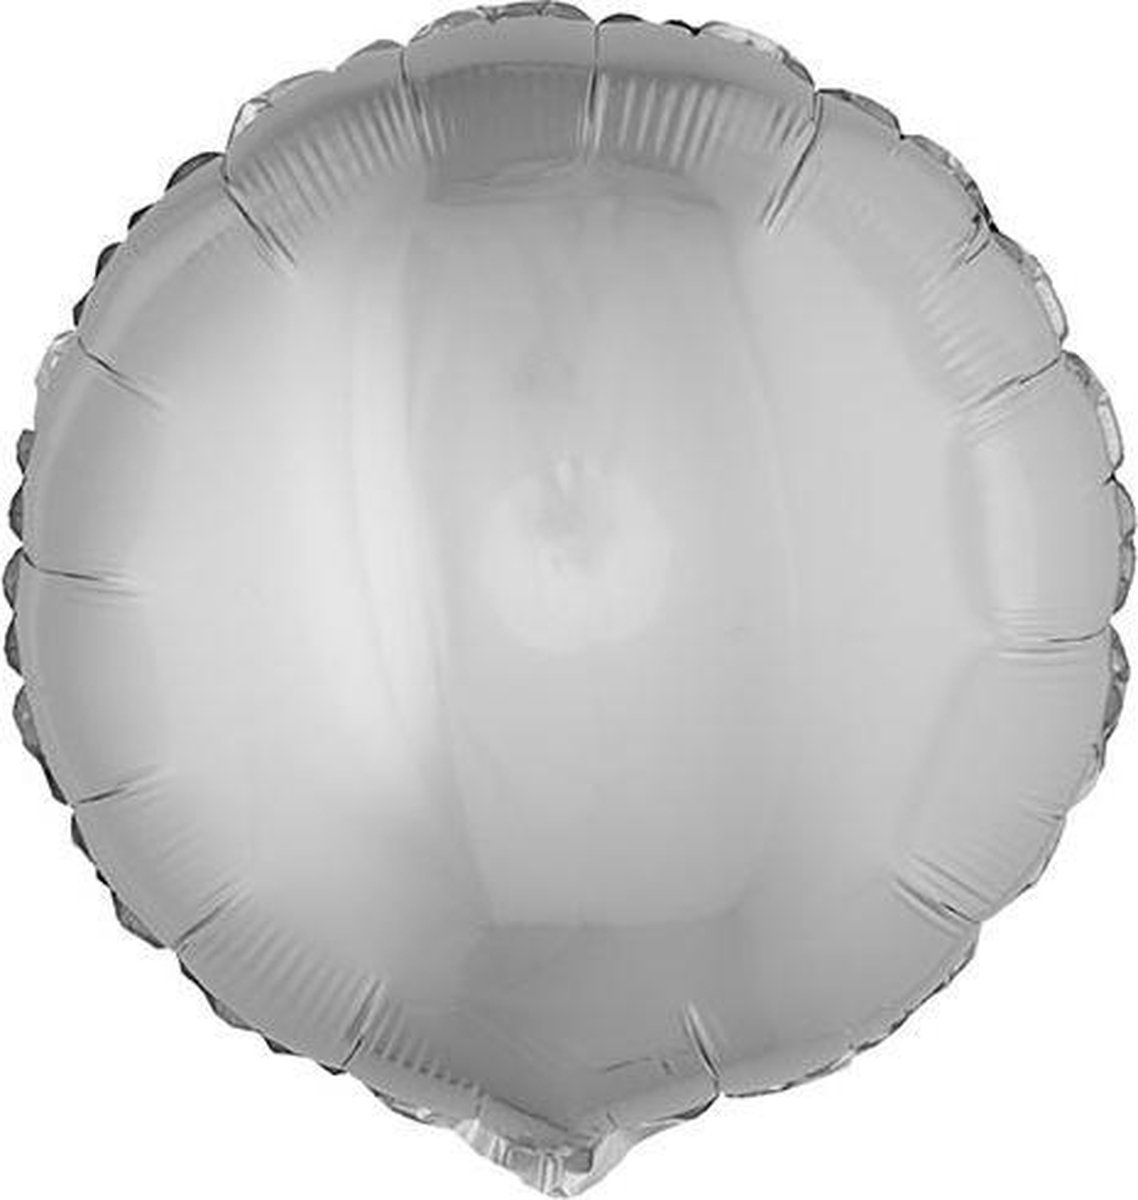 ESPA - Ronde zilverkleurige folie ballon 45 cm - Decoratie > Decoratie beeldjes